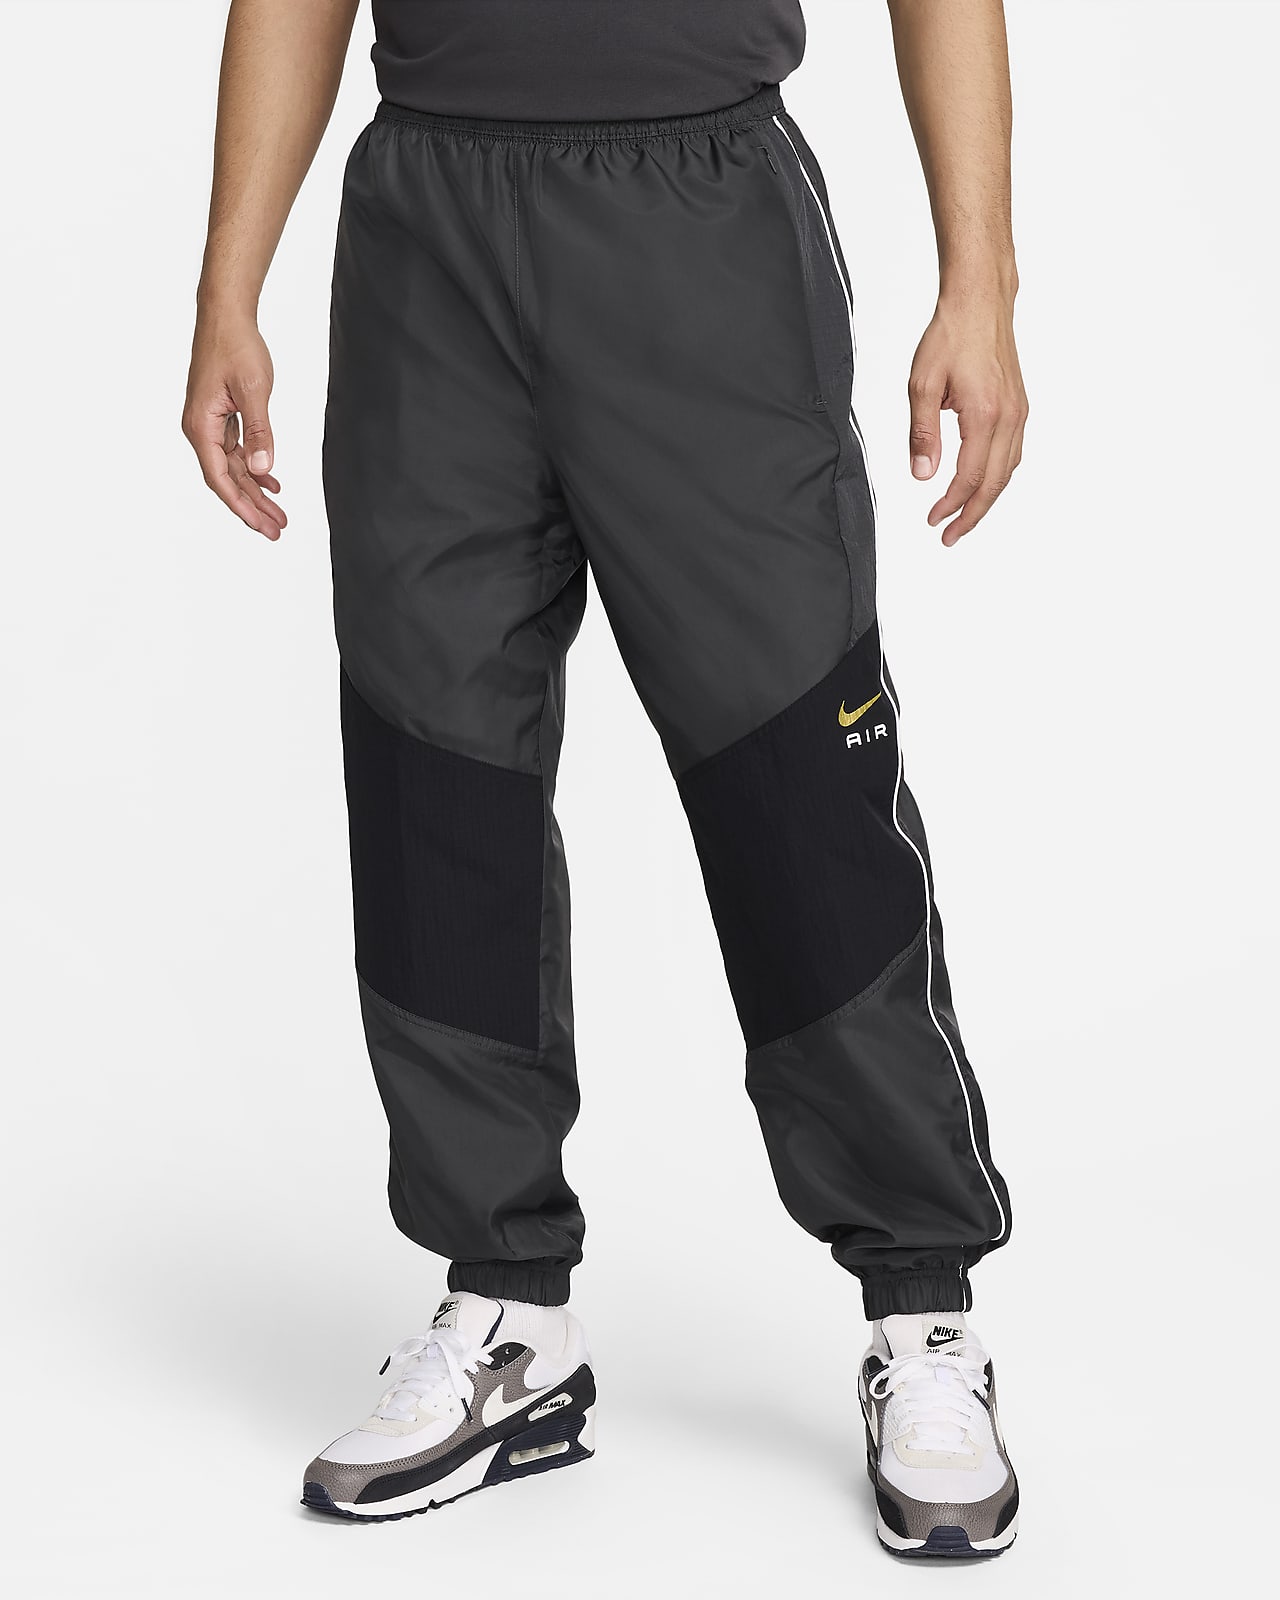 Pantaloni in tessuto Nike Air – Uomo